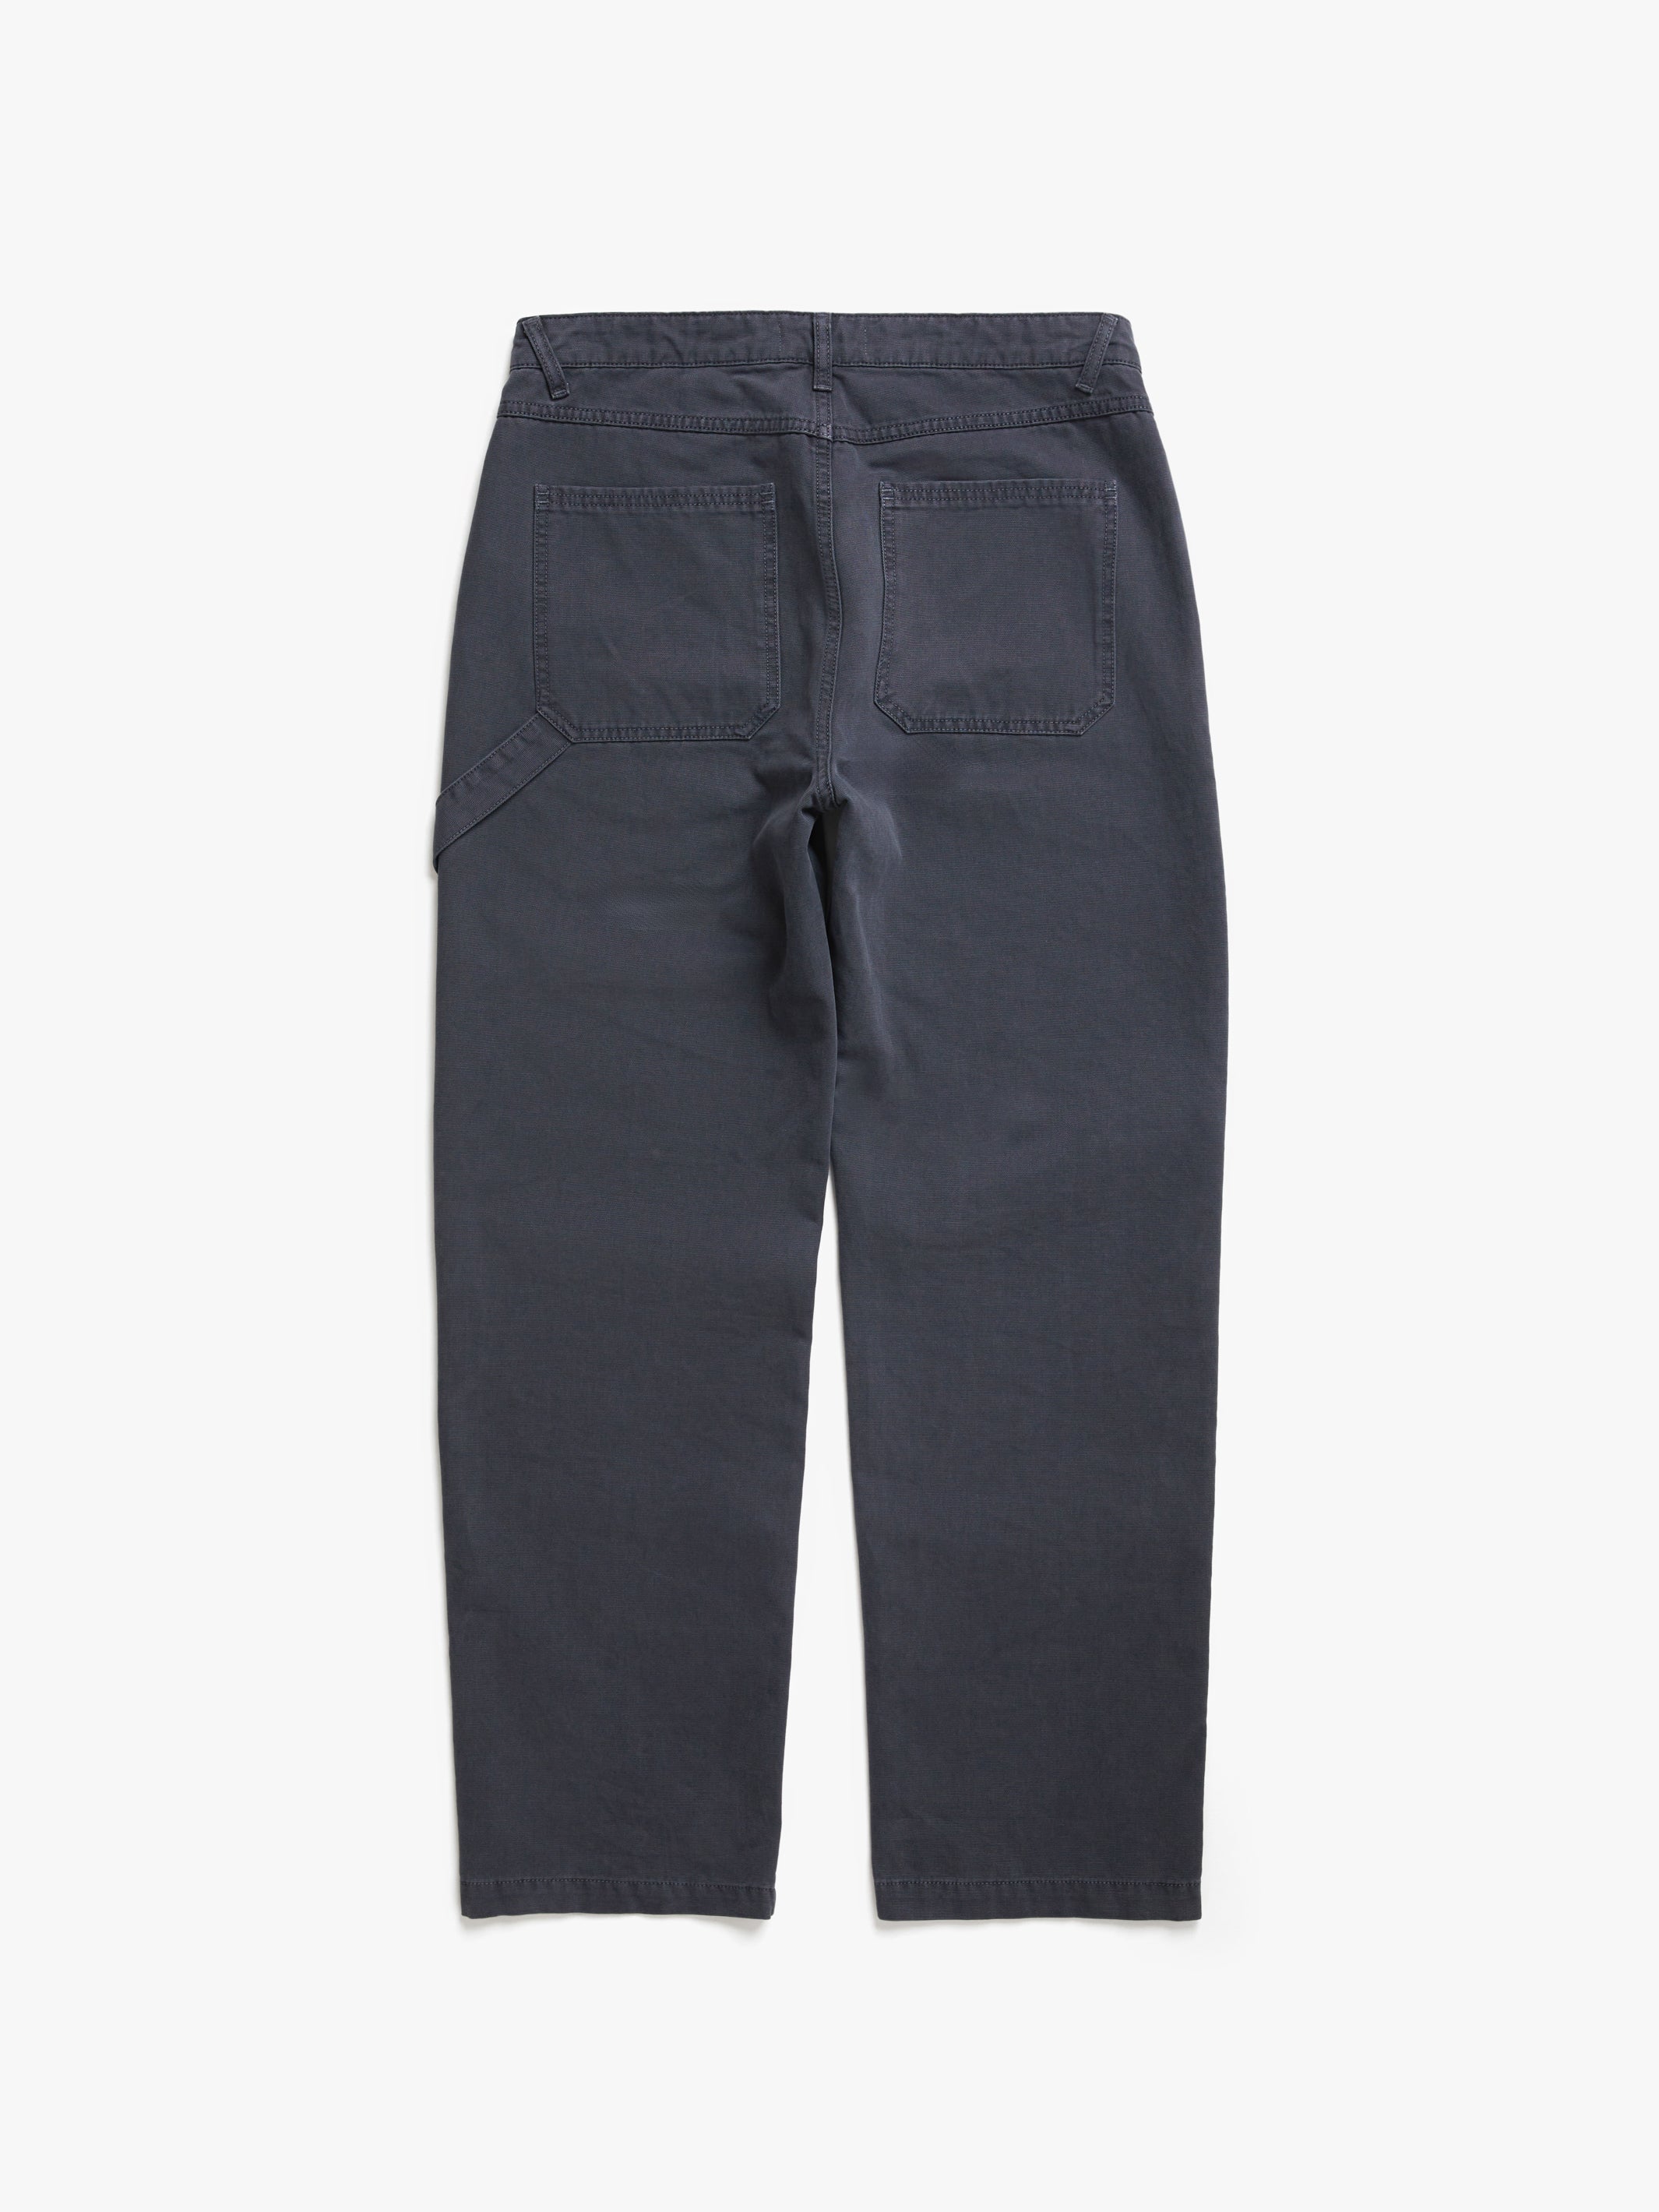 Men's Carpenter Pants in Asphalt - BROOKLYN INDUSTRIES